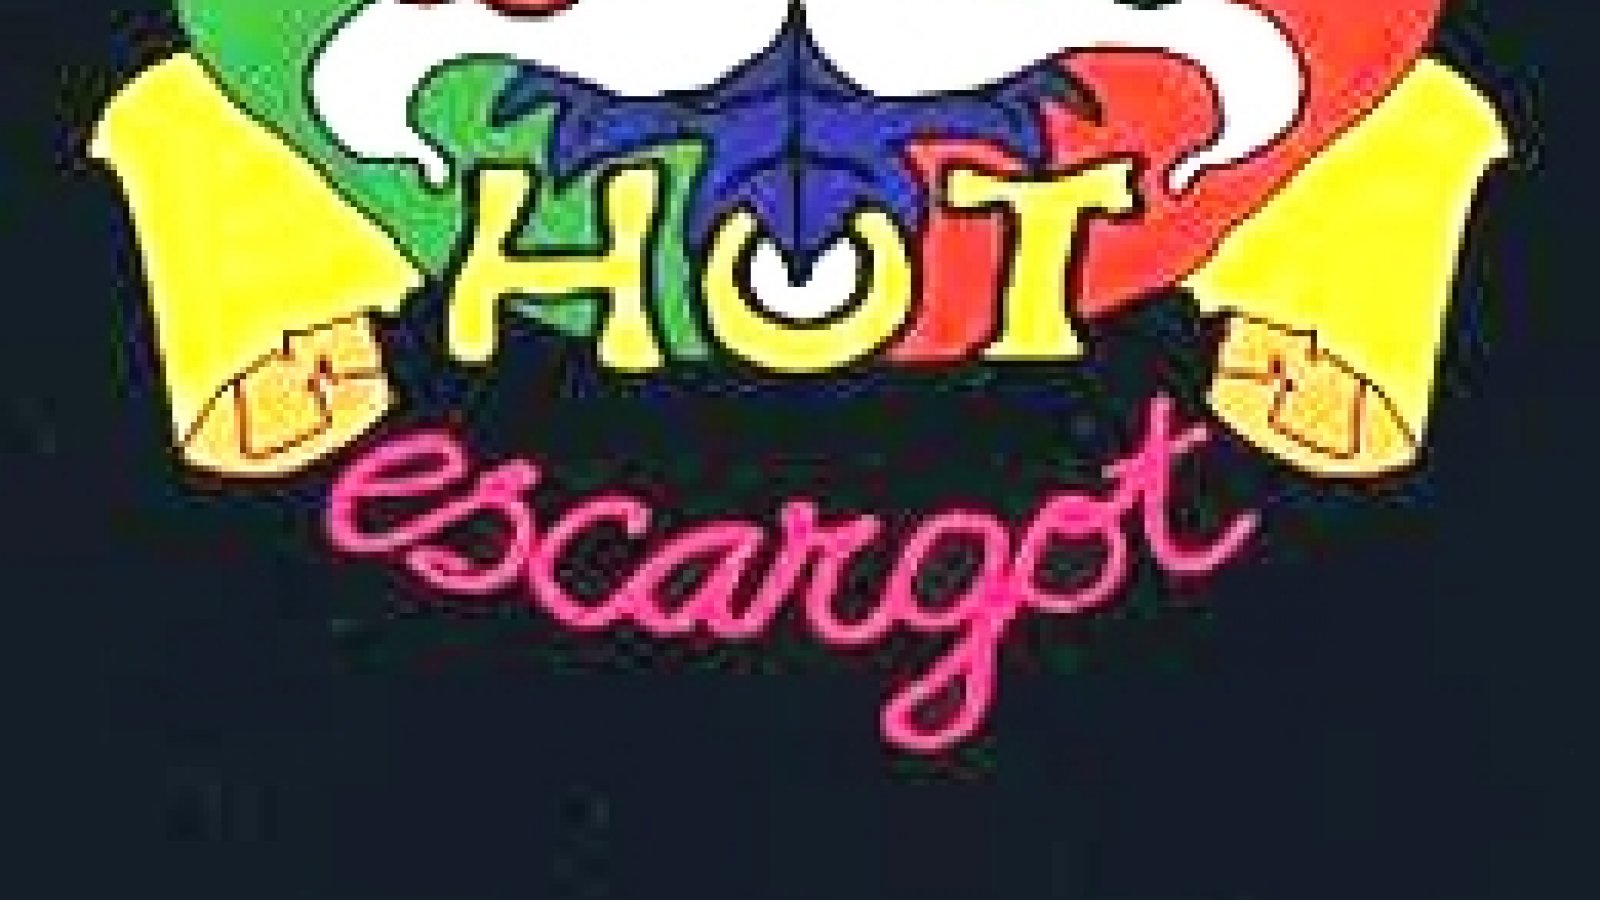 Hot Escargot